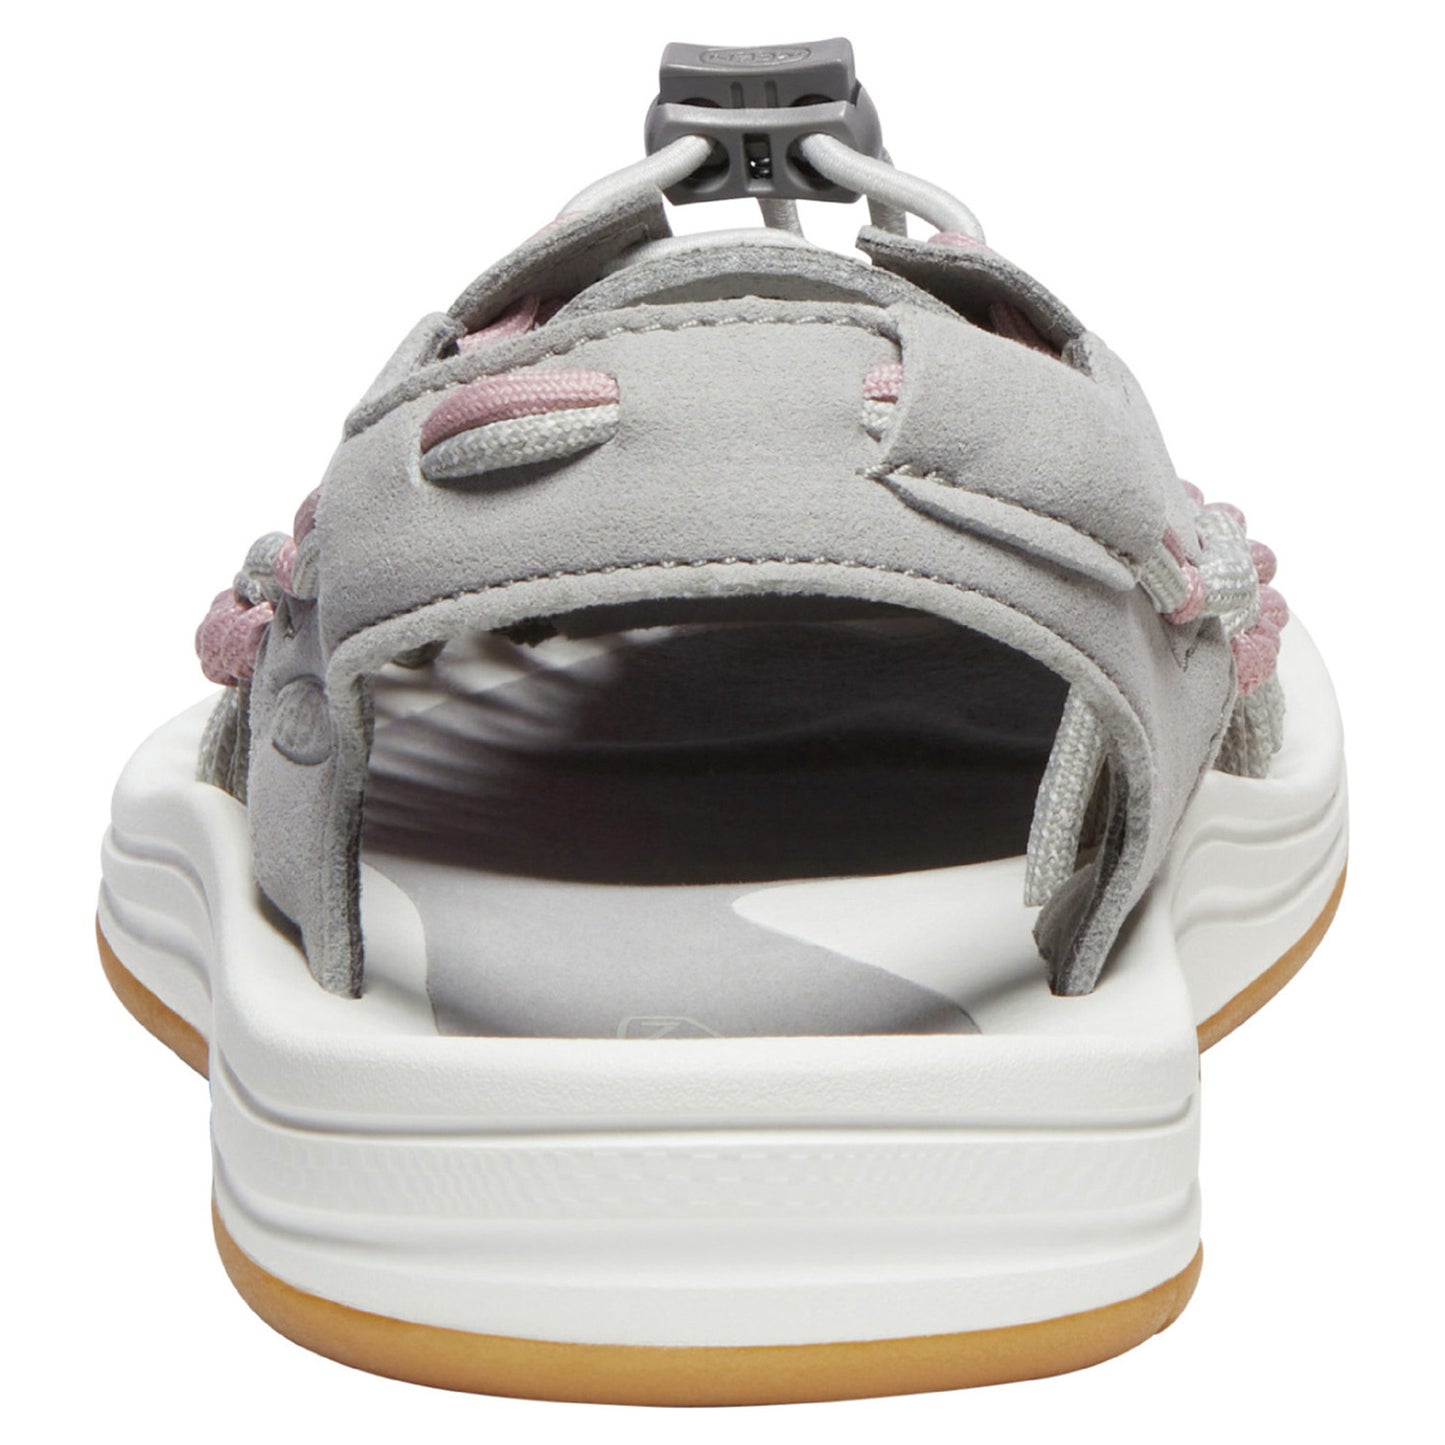 Peltz Shoes  Women's Keen Uneek Sandal Drizzle/Fawn 1027448